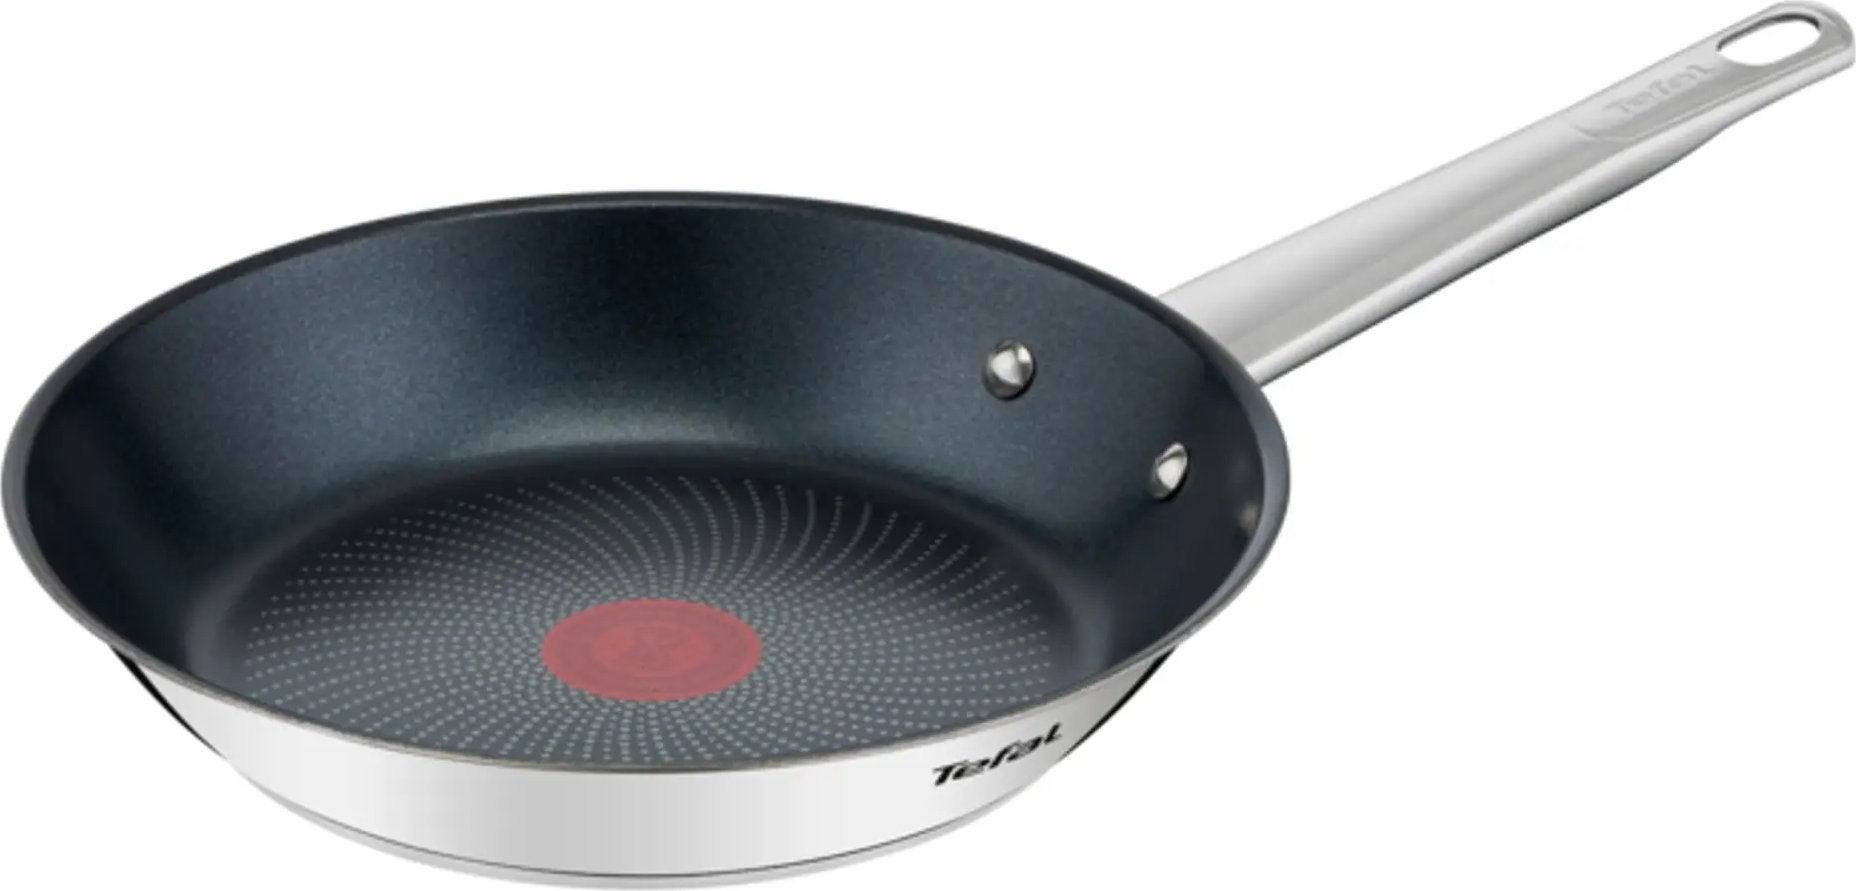 Tefal B9220404 Cook Eat Frying Pan, 24 cm, Stainless Steel Pannas un katli